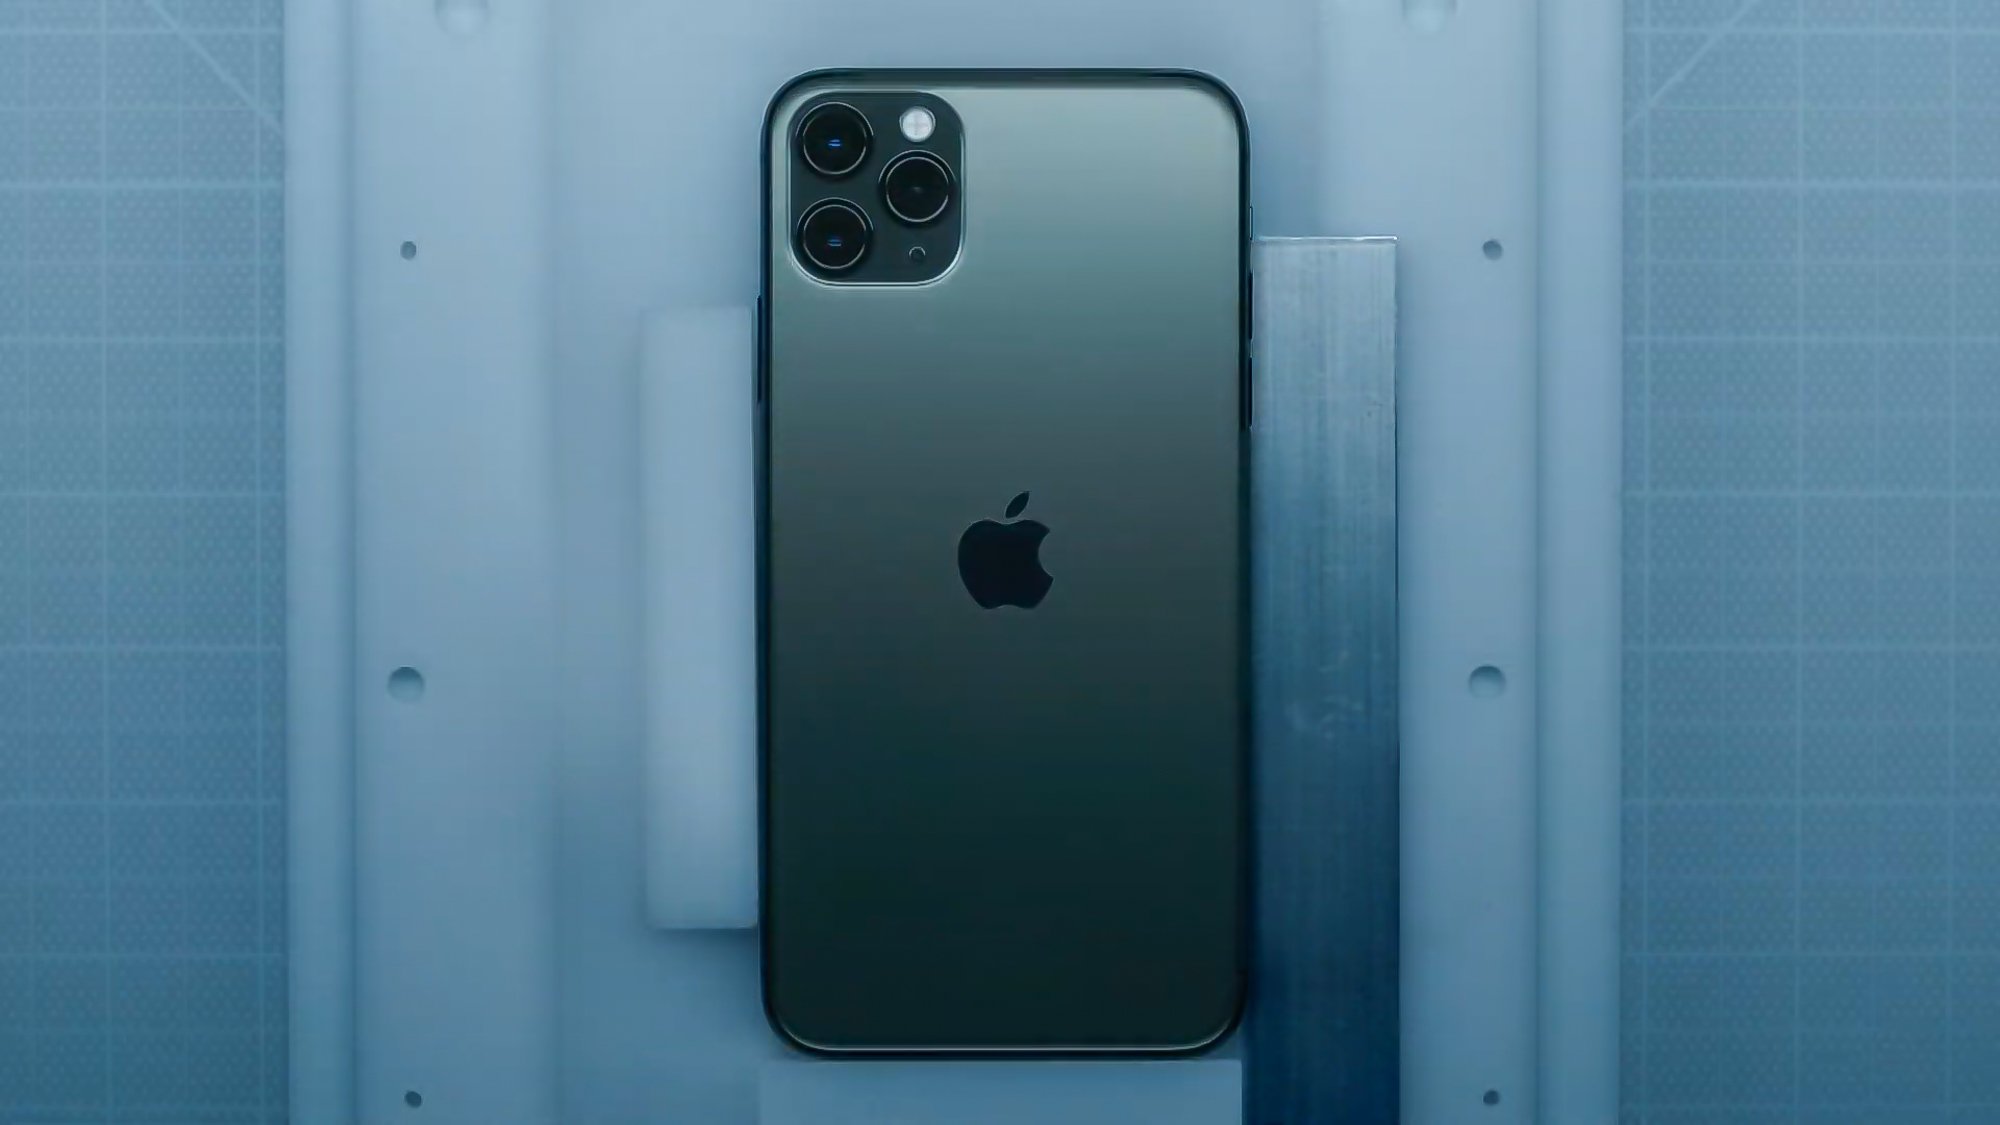 Apple iPhone 11 und iPhone 11 Pro (Max): die neuen iPhones